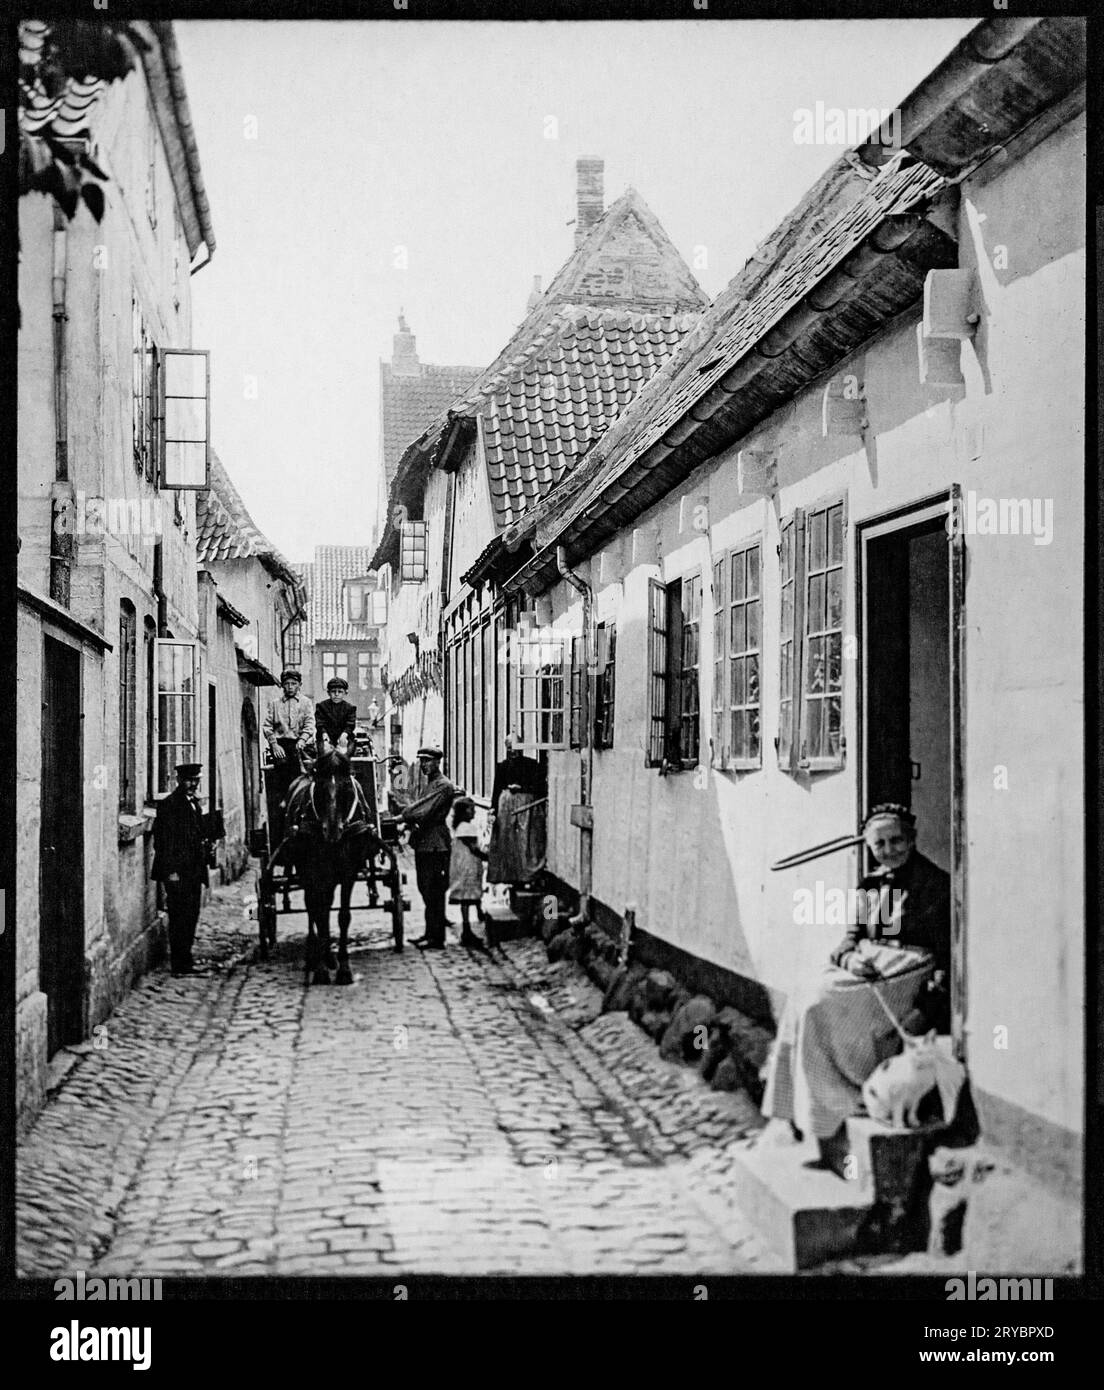 Allée à Odense, Danemark par V Richter c 1900-1920 Banque D'Images